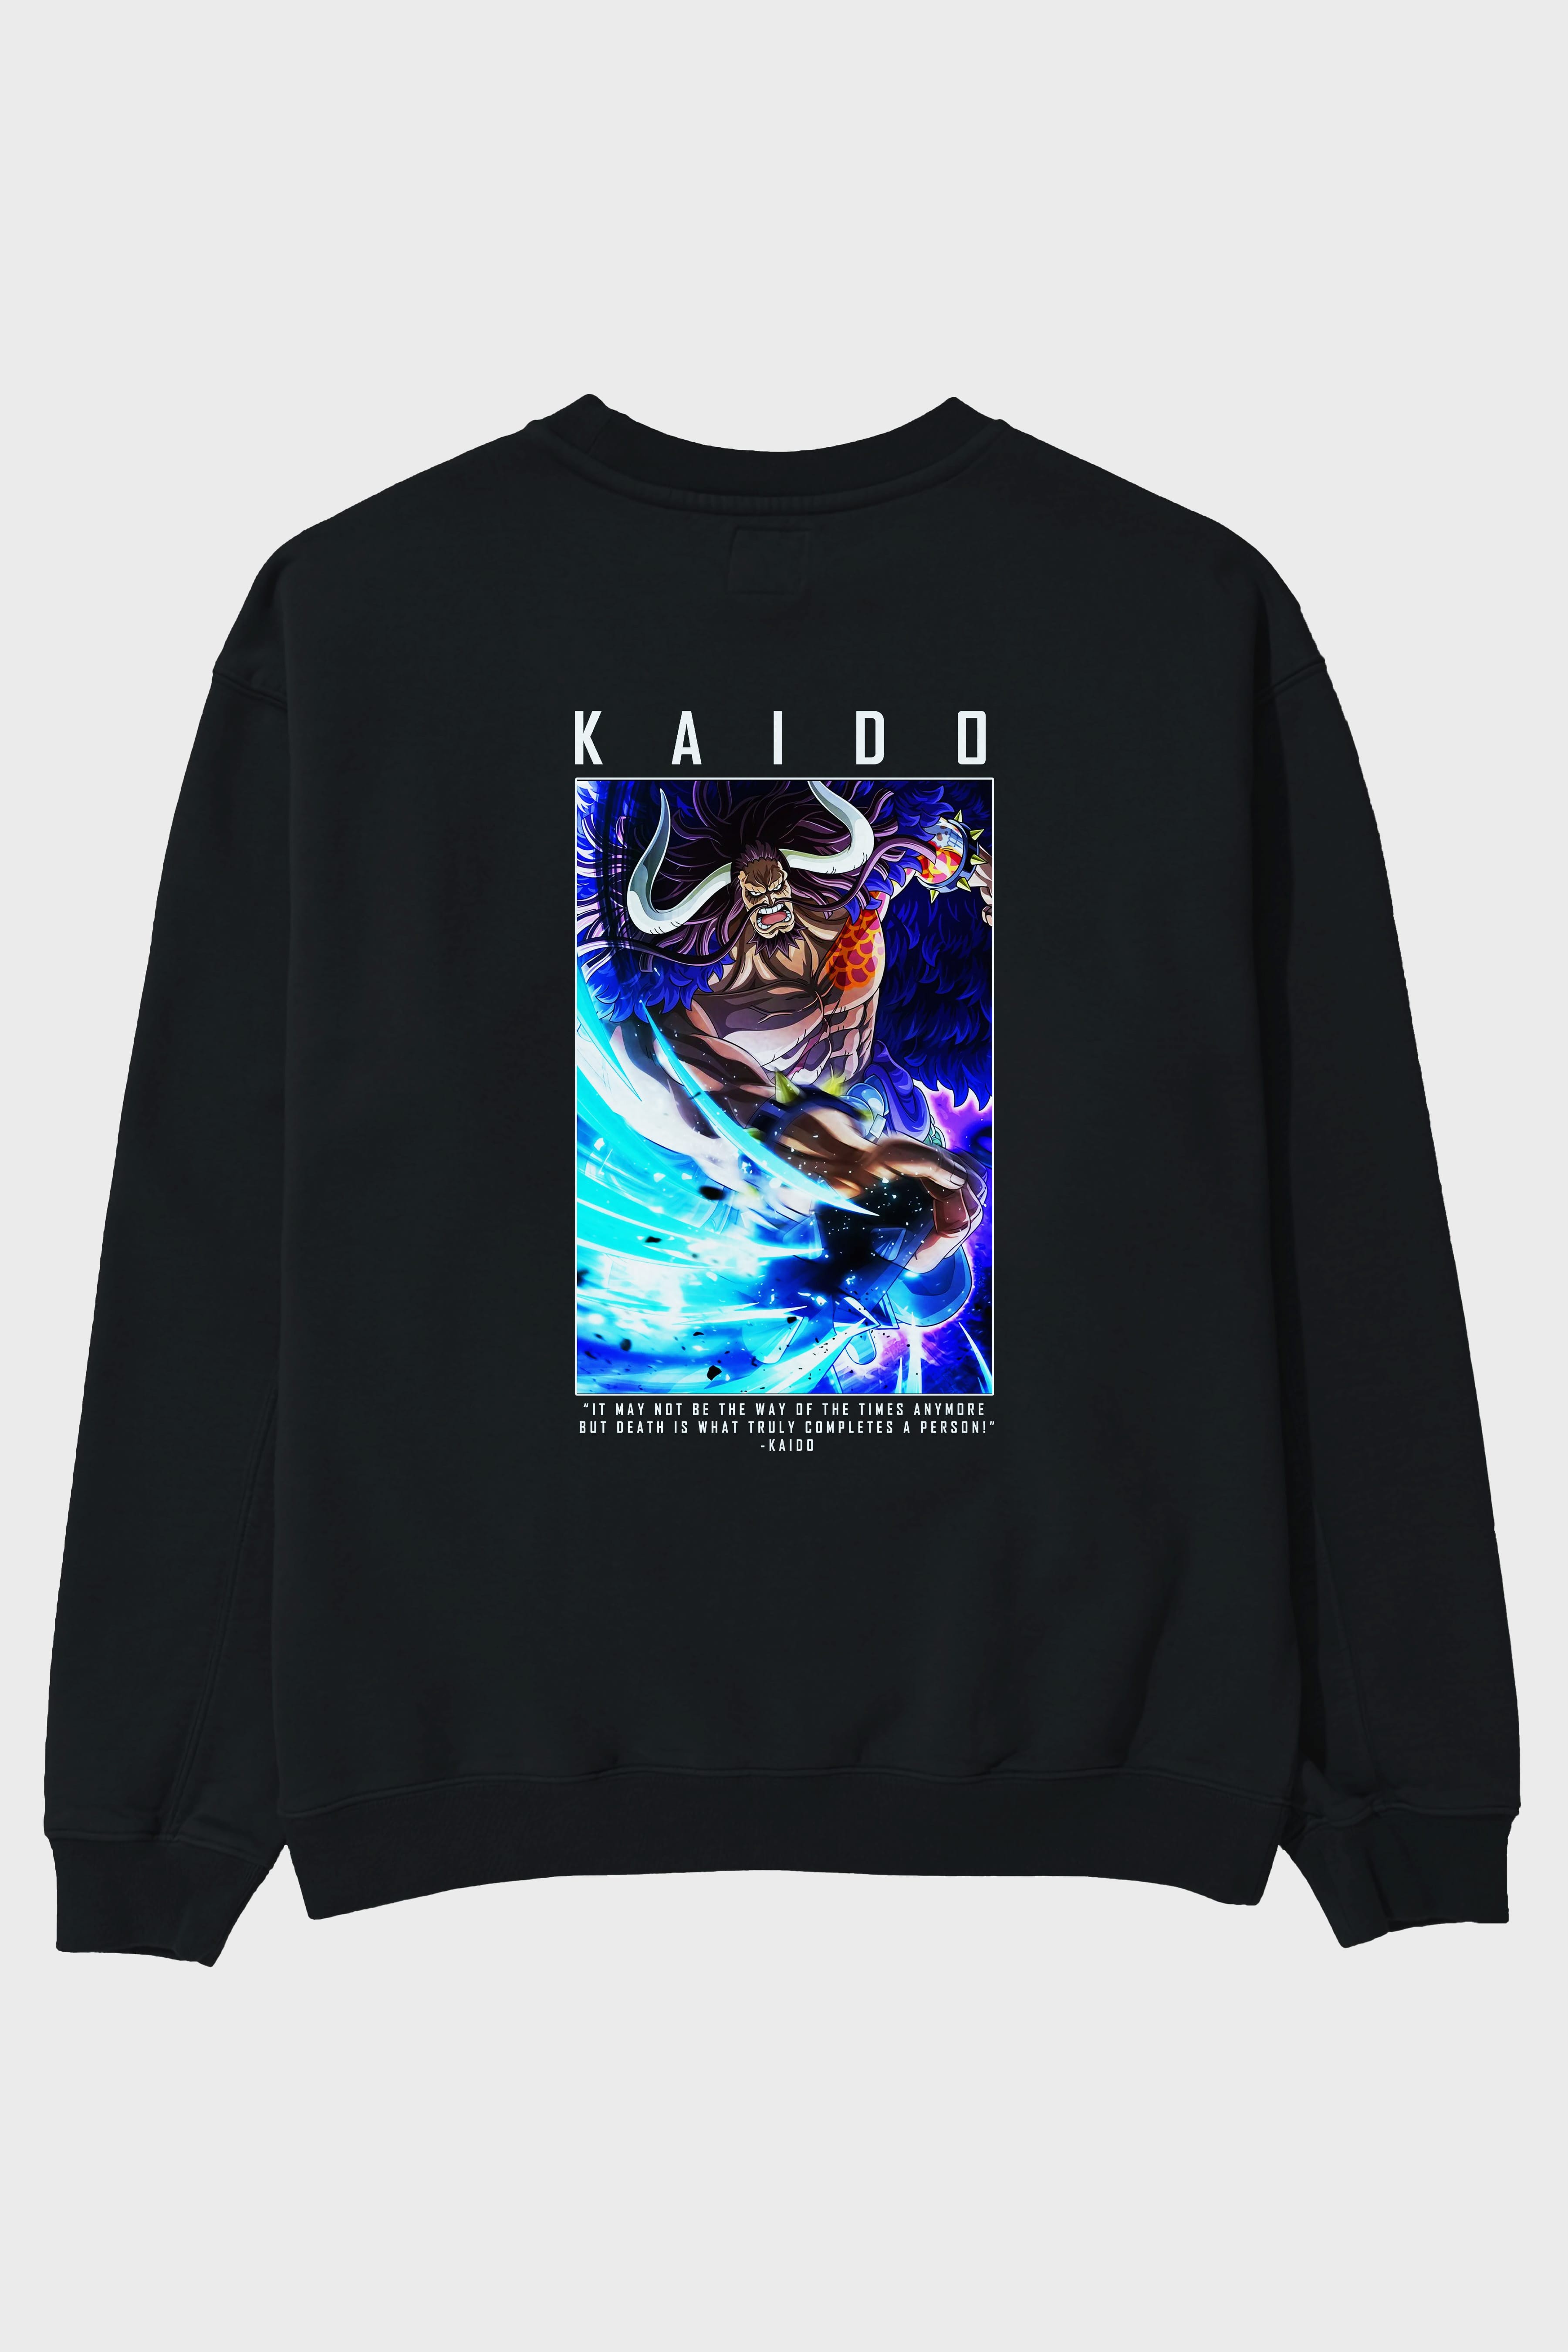 Kaido 2 Arka Baskılı Anime Oversize Sweatshirt Erkek Kadın Unisex